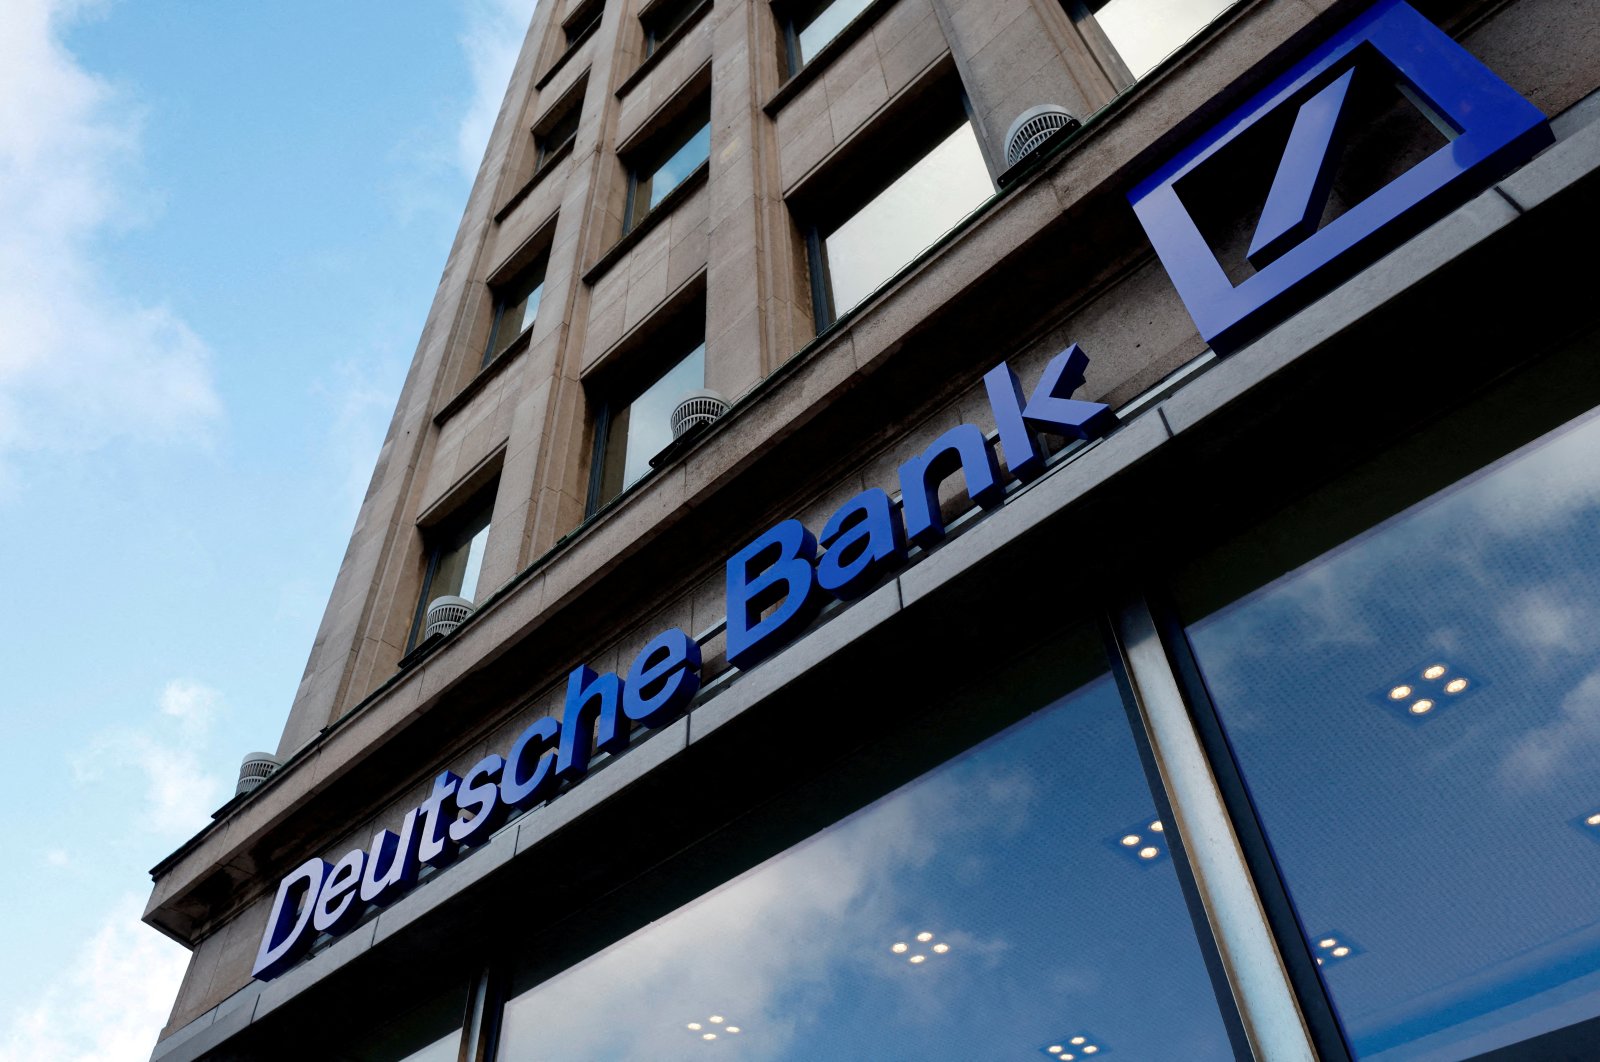 The logo of Deutsche Bank is seen in Brussels, Belgium, Dec. 6, 2022. (Reuters Photo)